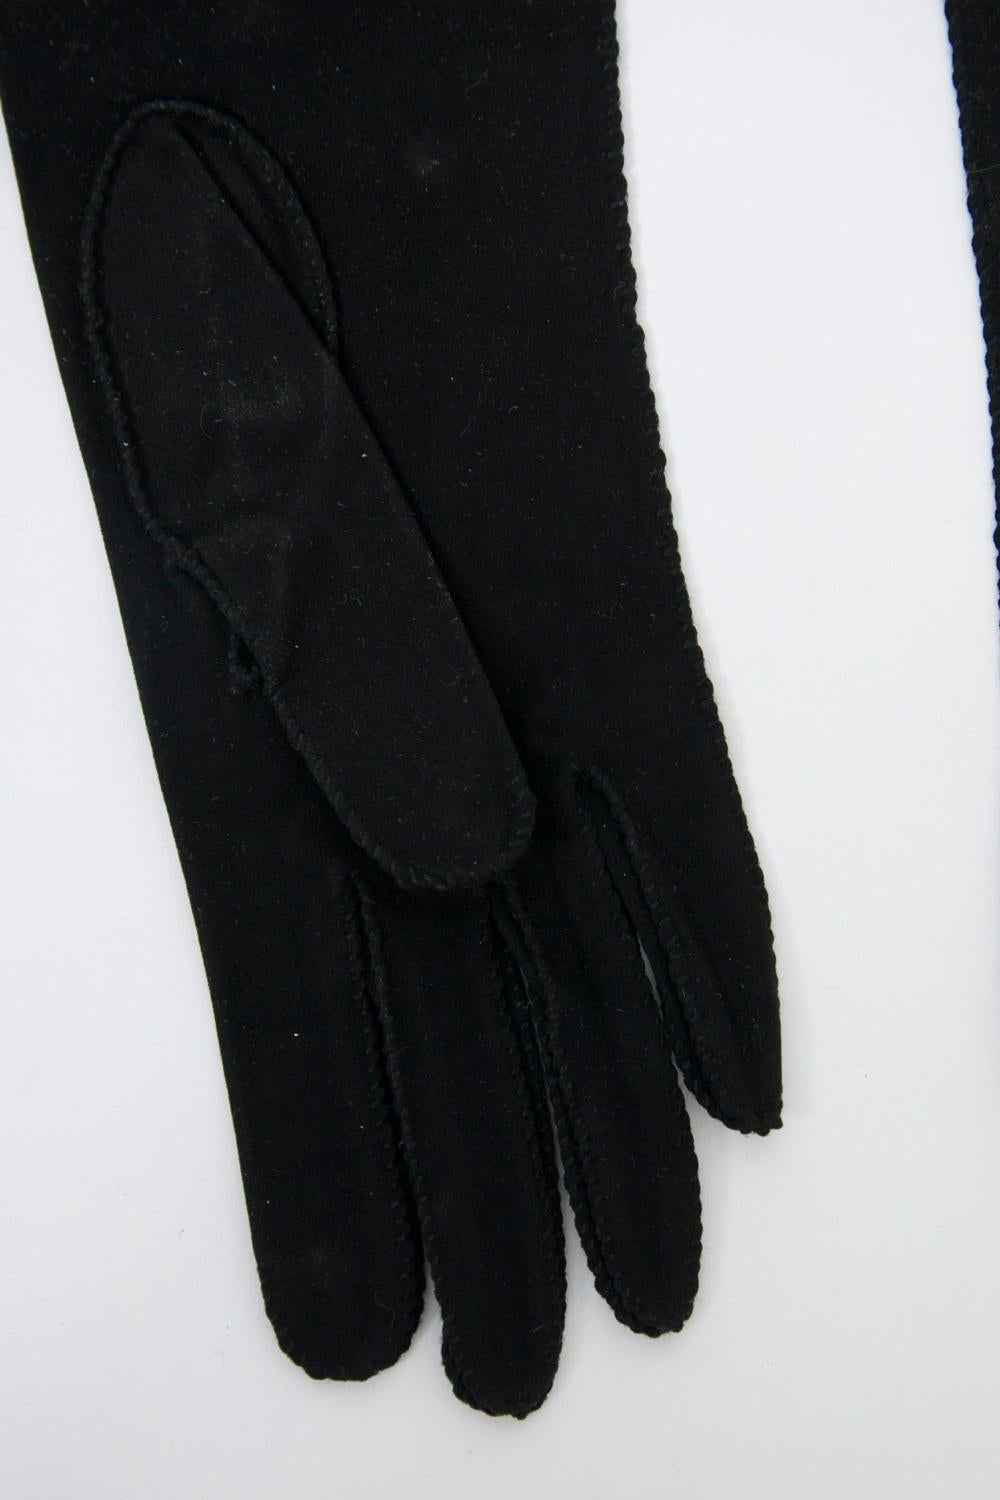 Black Floral Embroidered Gloves For Sale